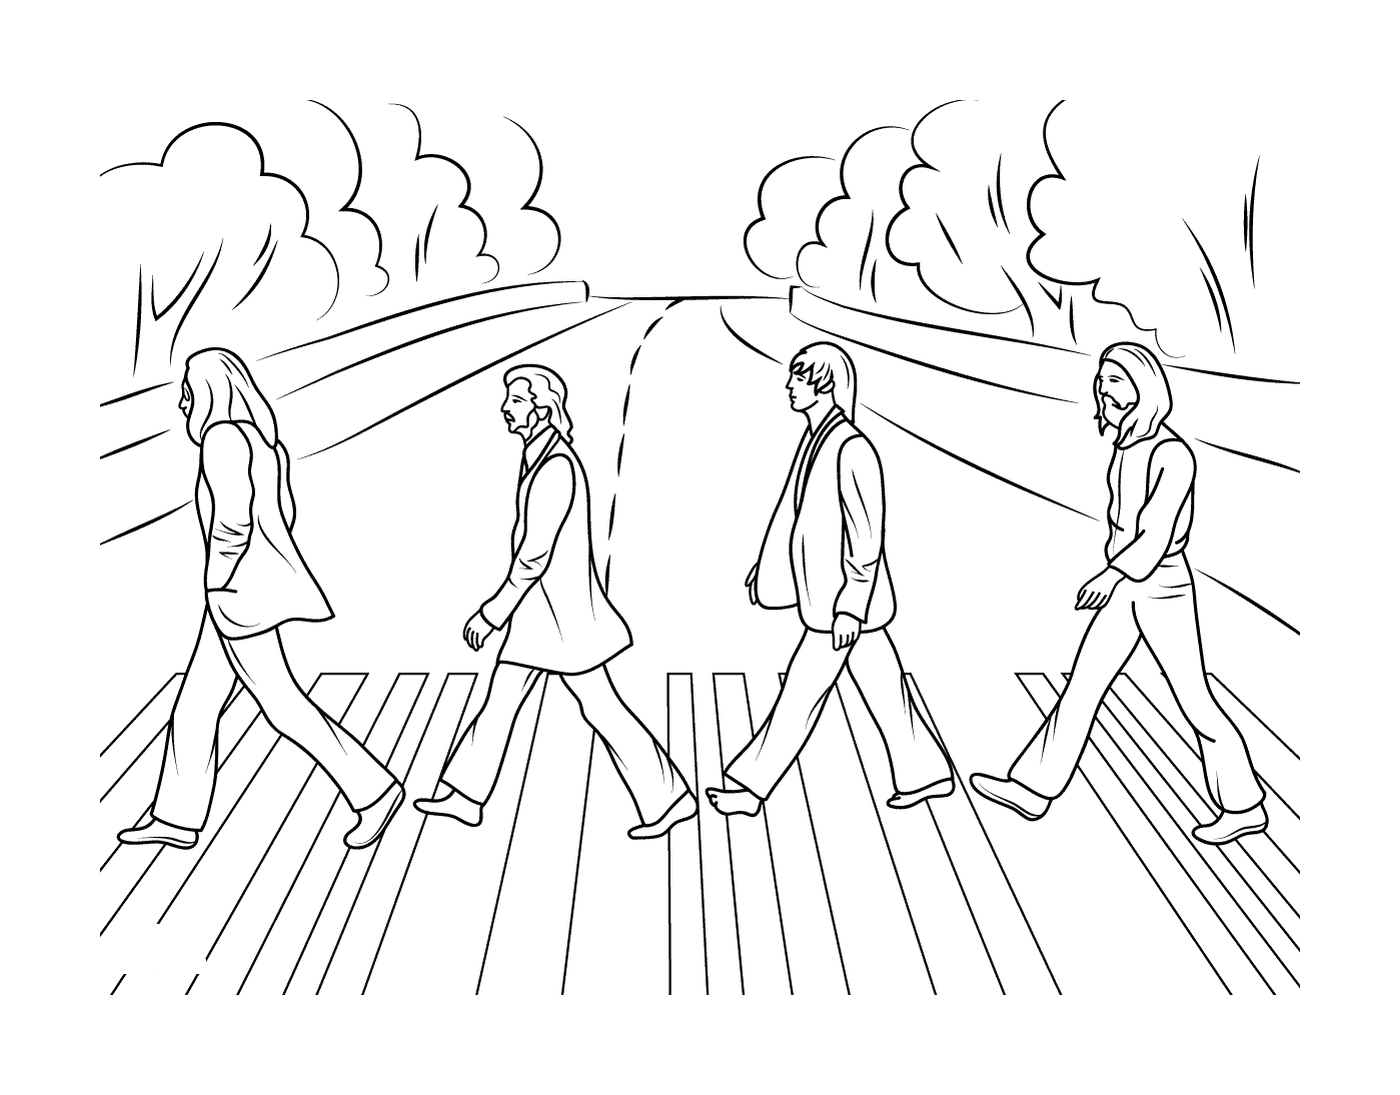   Un groupe de personnes traversant une rue 